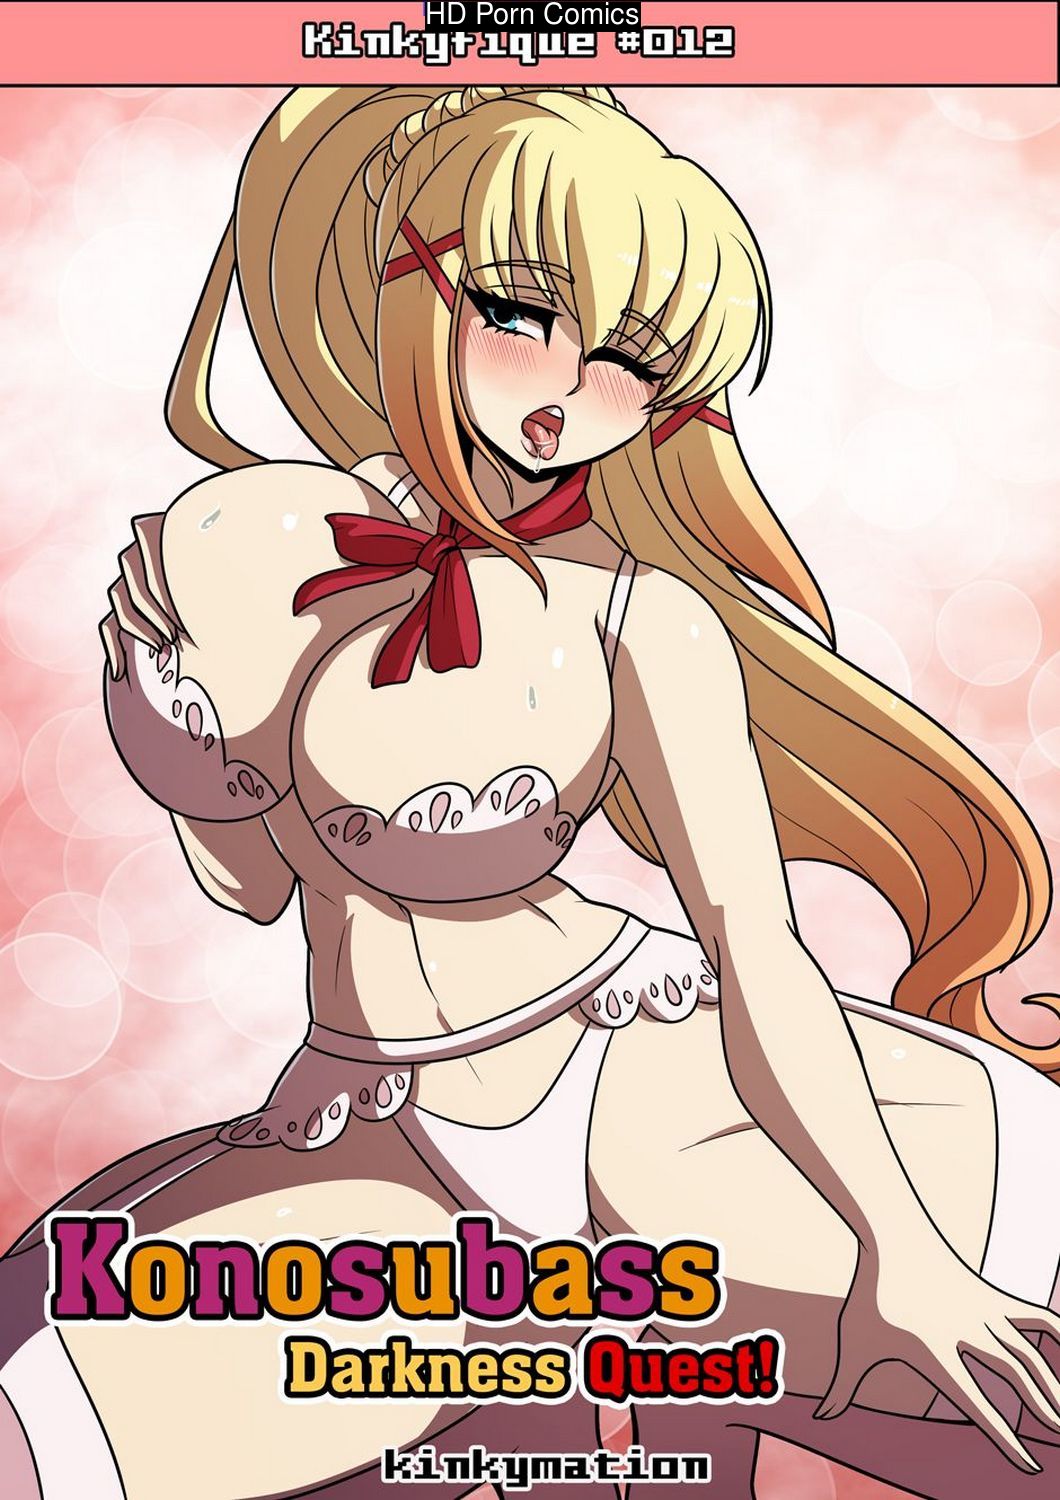 Konosubass - Darkness Quest! comic porn | HD Porn Comics